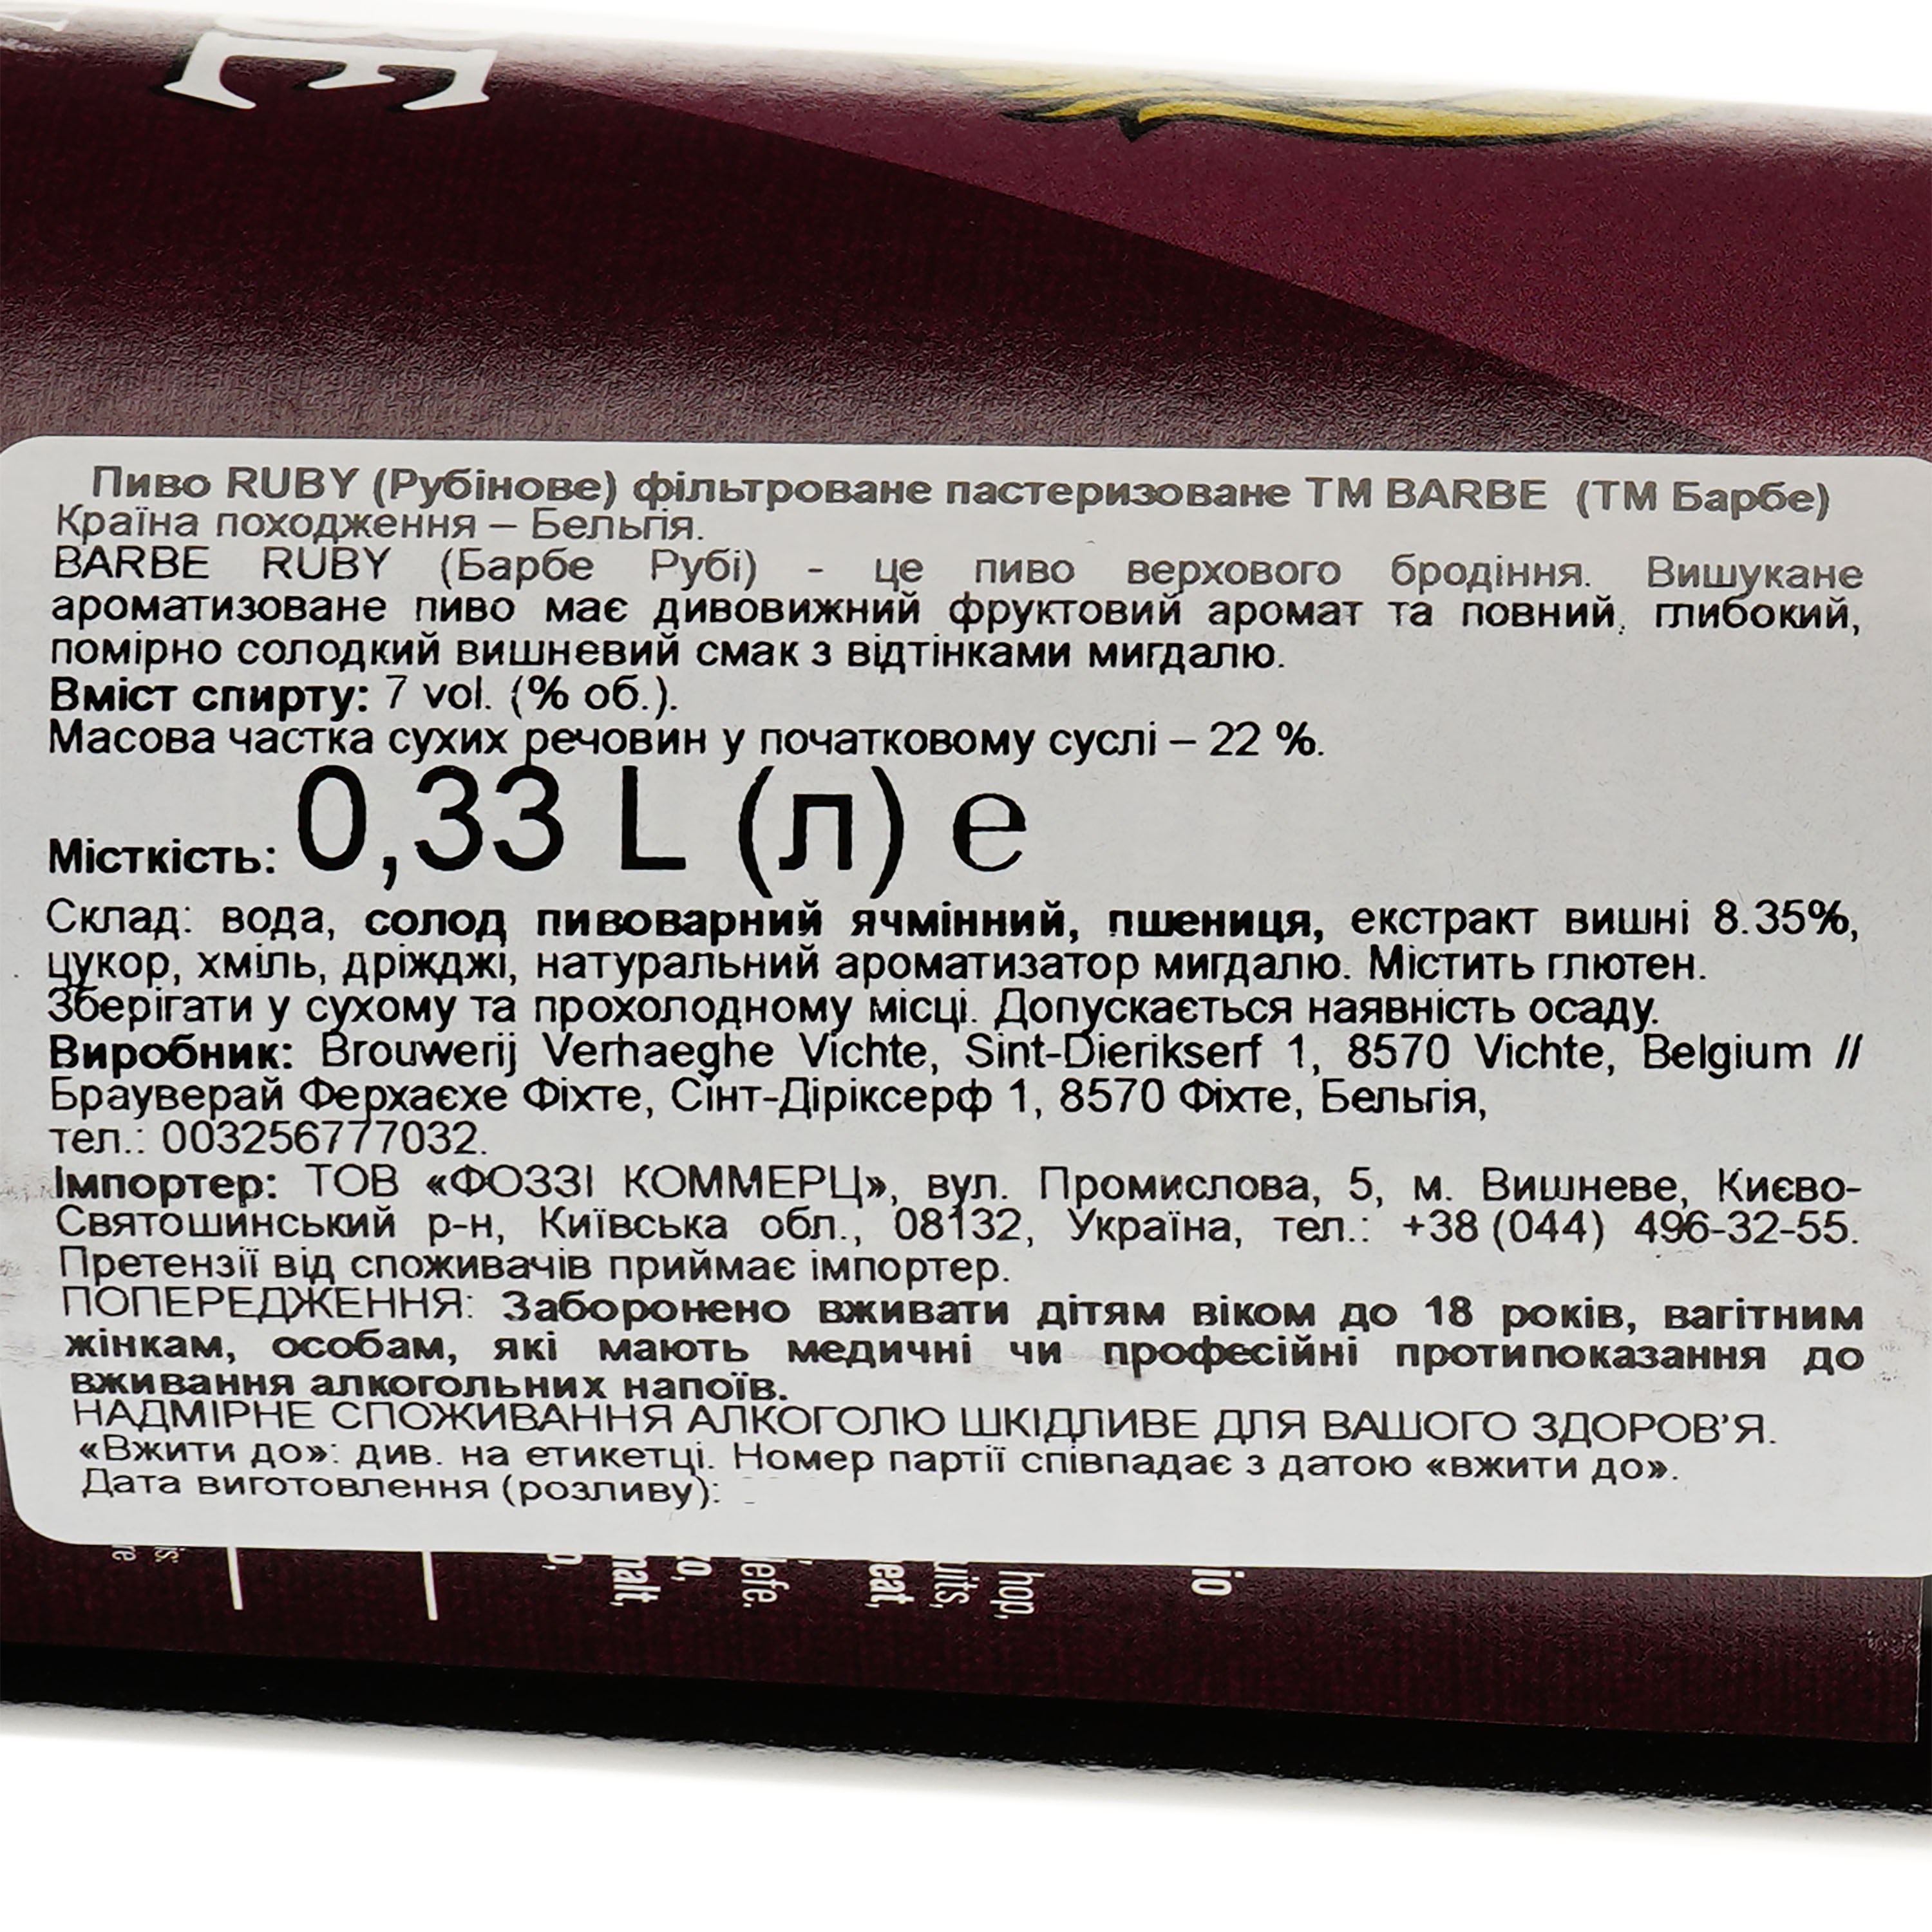 Пиво Barbe Ruby Рубиновое фильтрованное пастер, 7,7% 0,33 л (696333) - фото 3